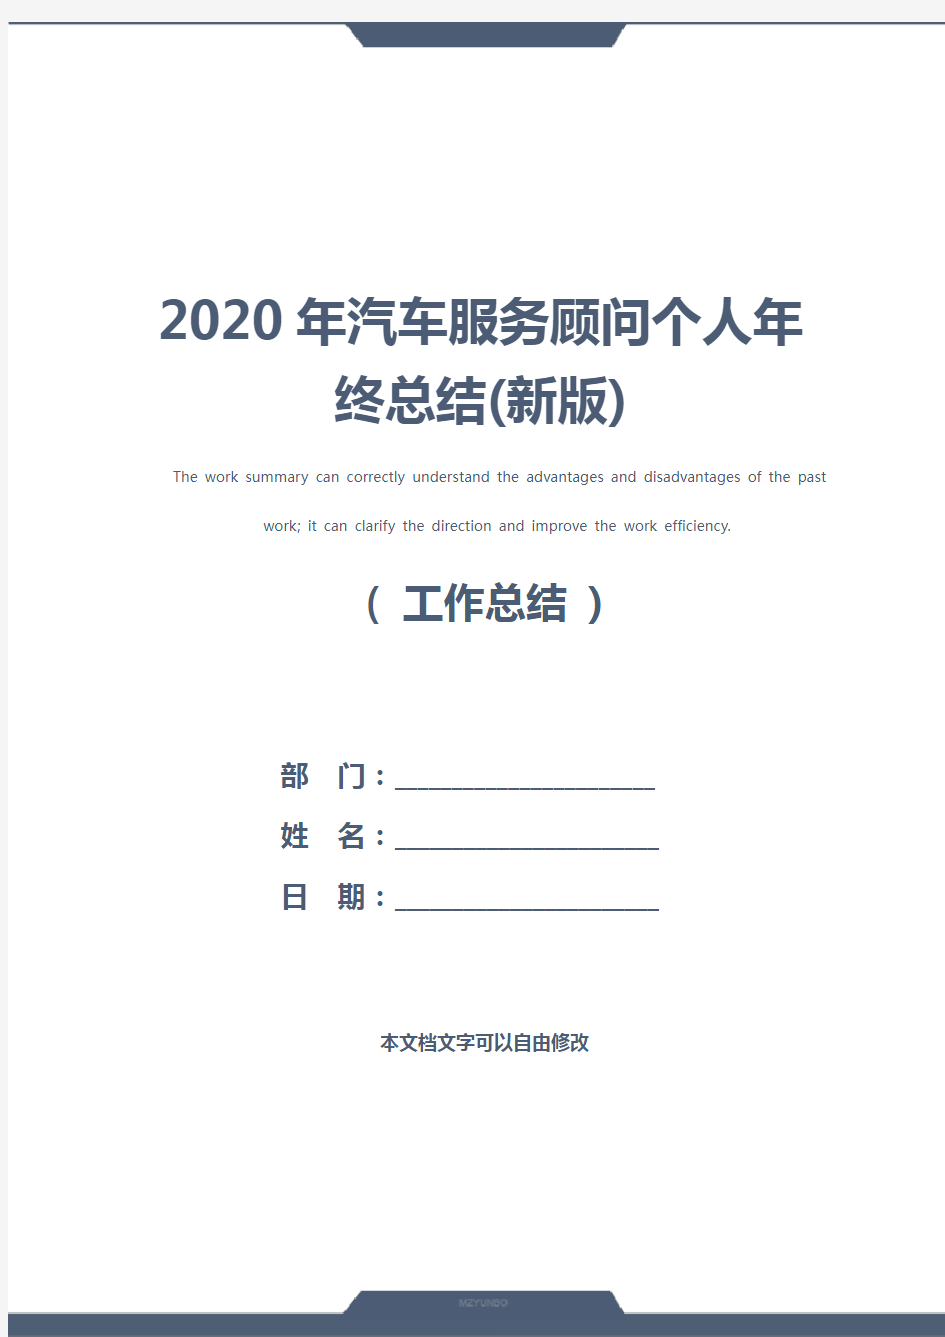 2020年汽车服务顾问个人年终总结(新版)